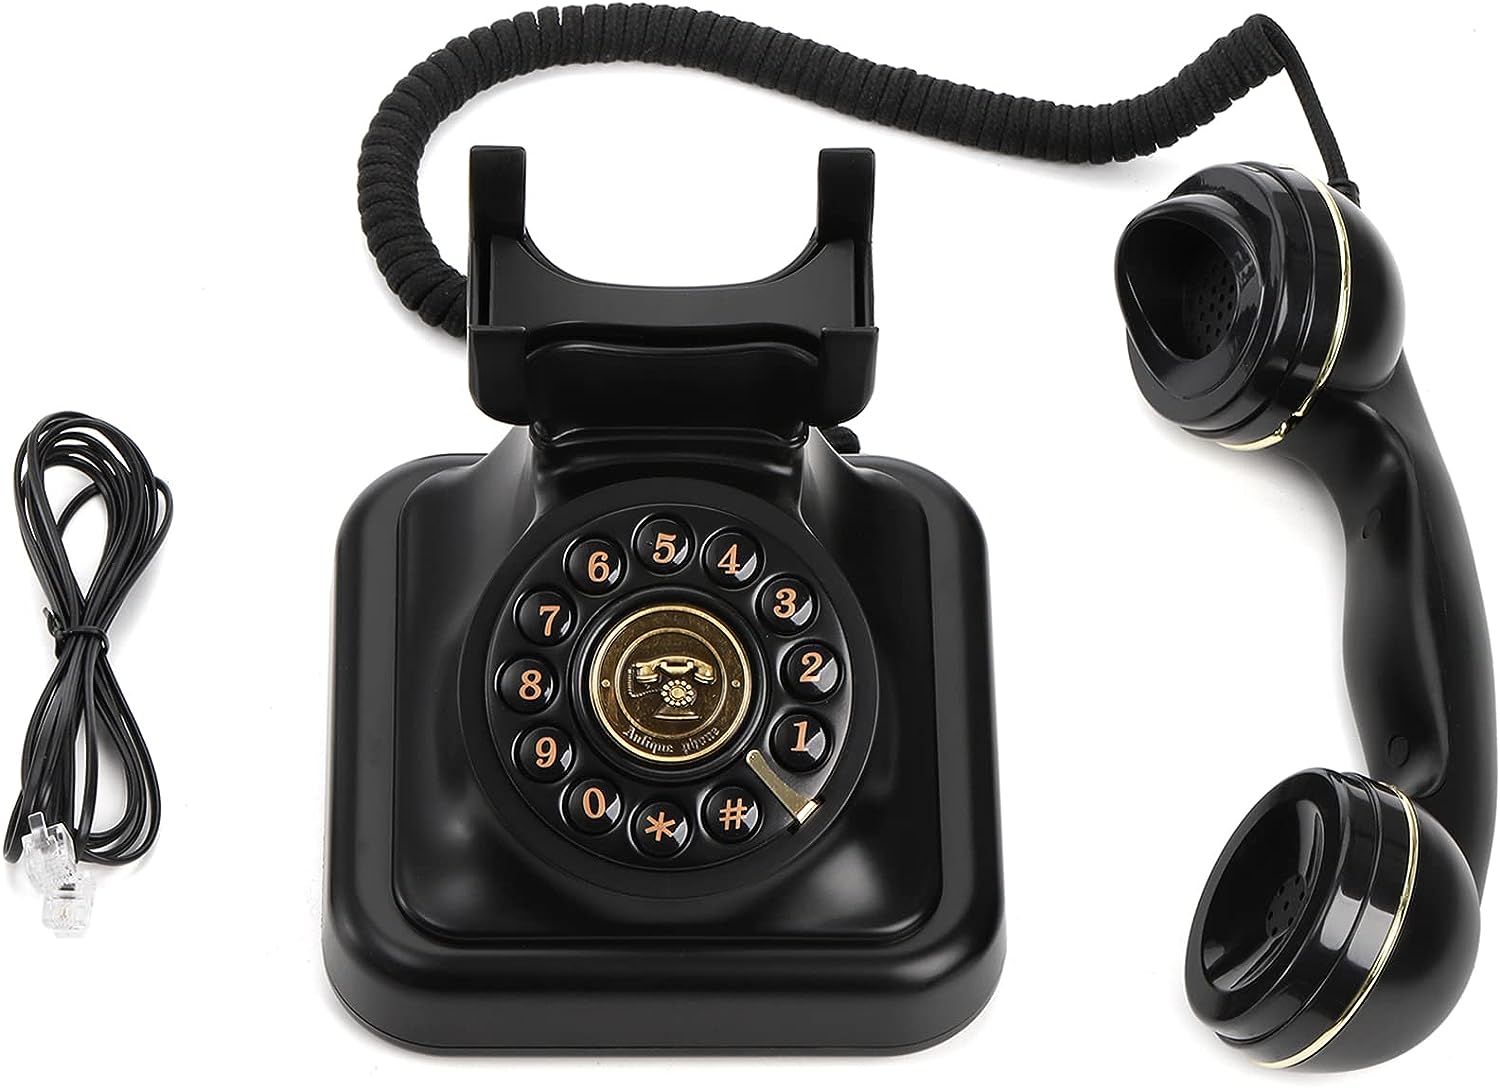 Teléfono fijo retro, teléfono antiguo antiguo con botón de marcación y -  VIRTUAL MUEBLES